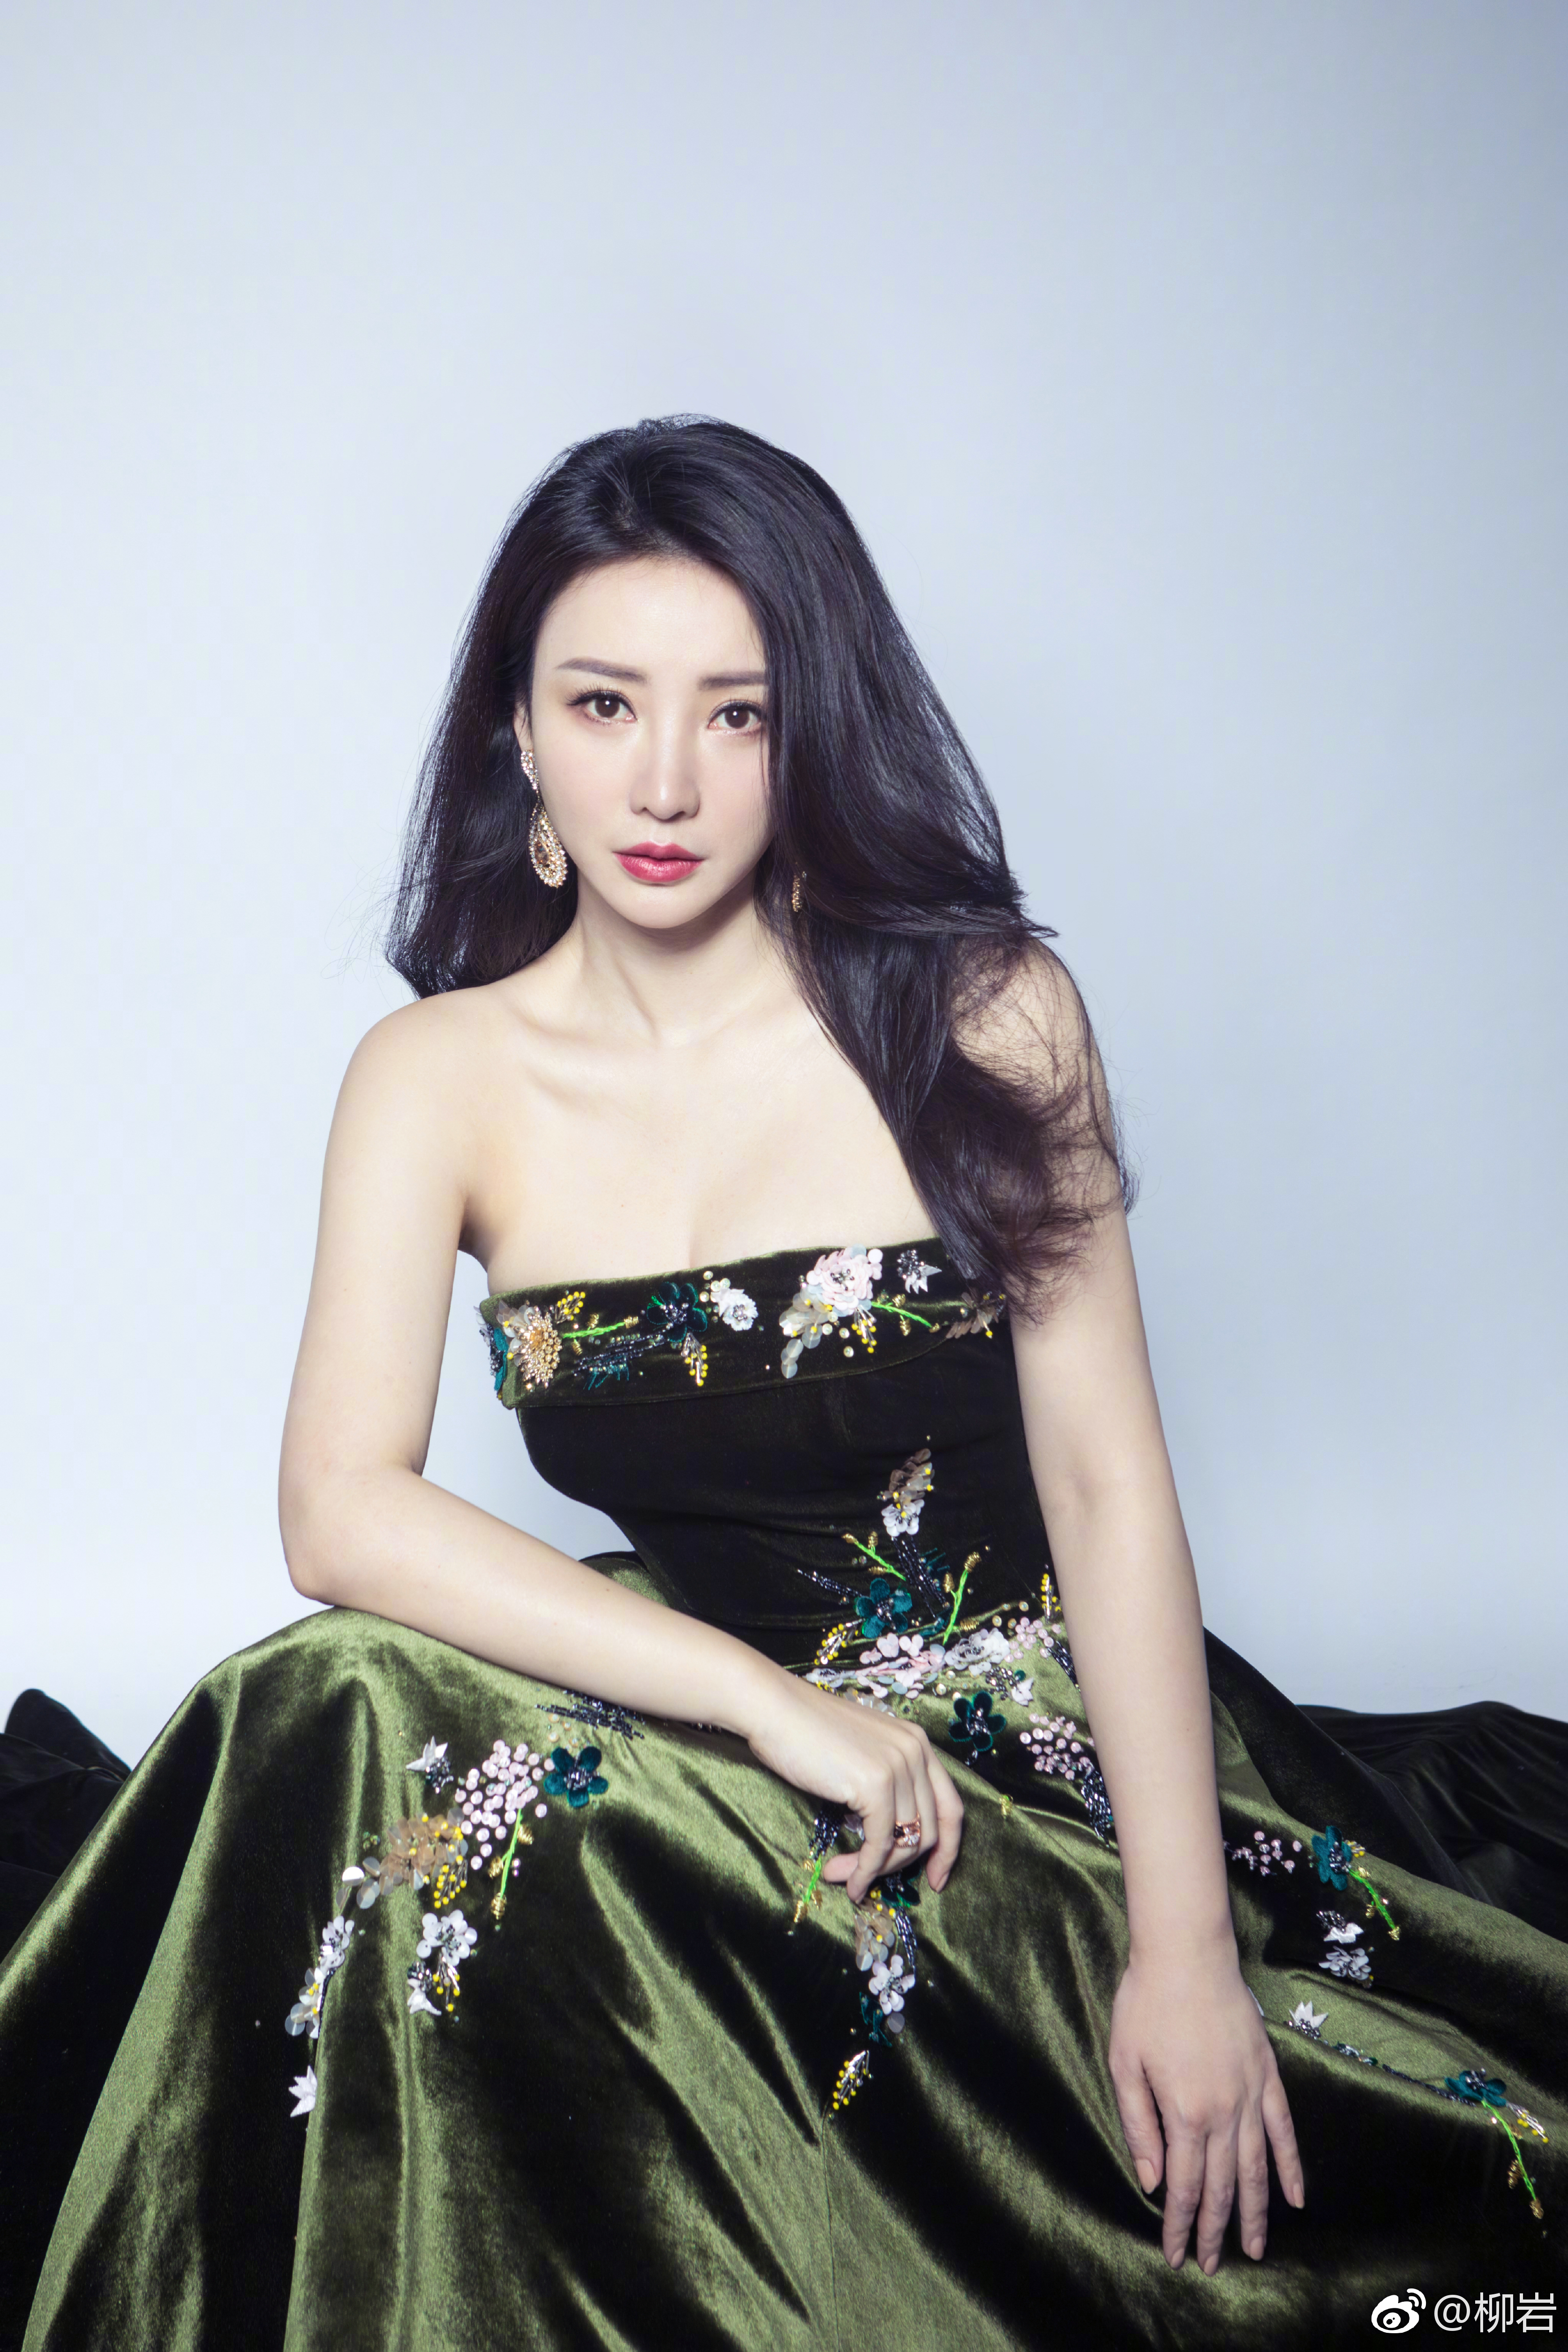 Liuyan Chinese Green Dress Looking At Viewer Black Hair Red Lipstick Women Model Brunette Studio 3344x5015